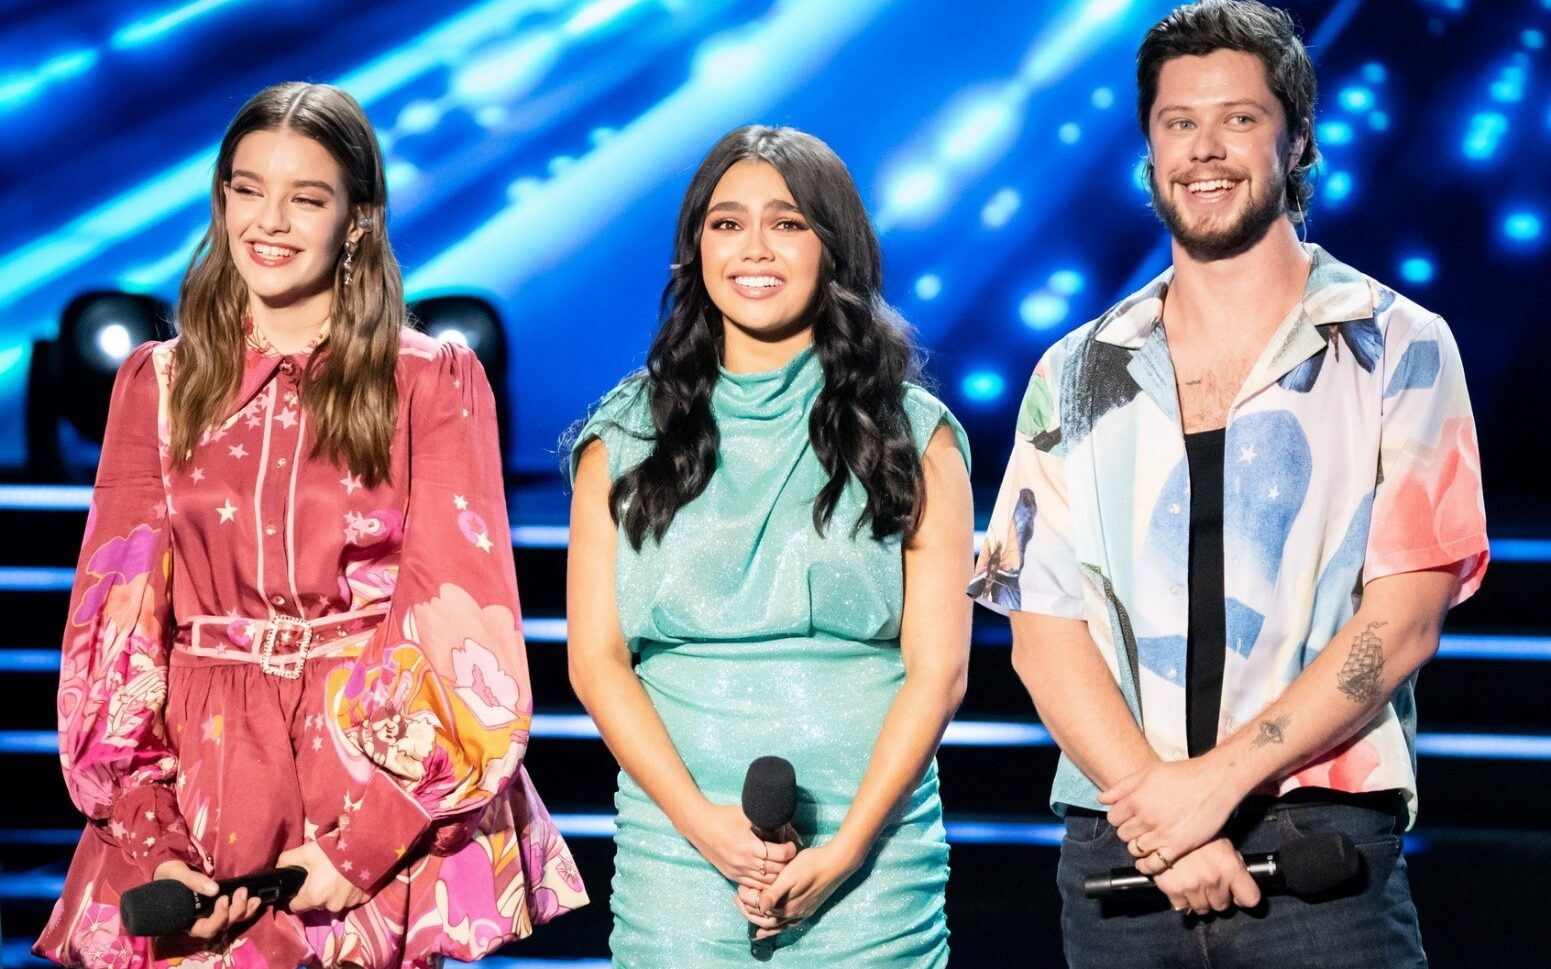 Australian Idol on Channel 7